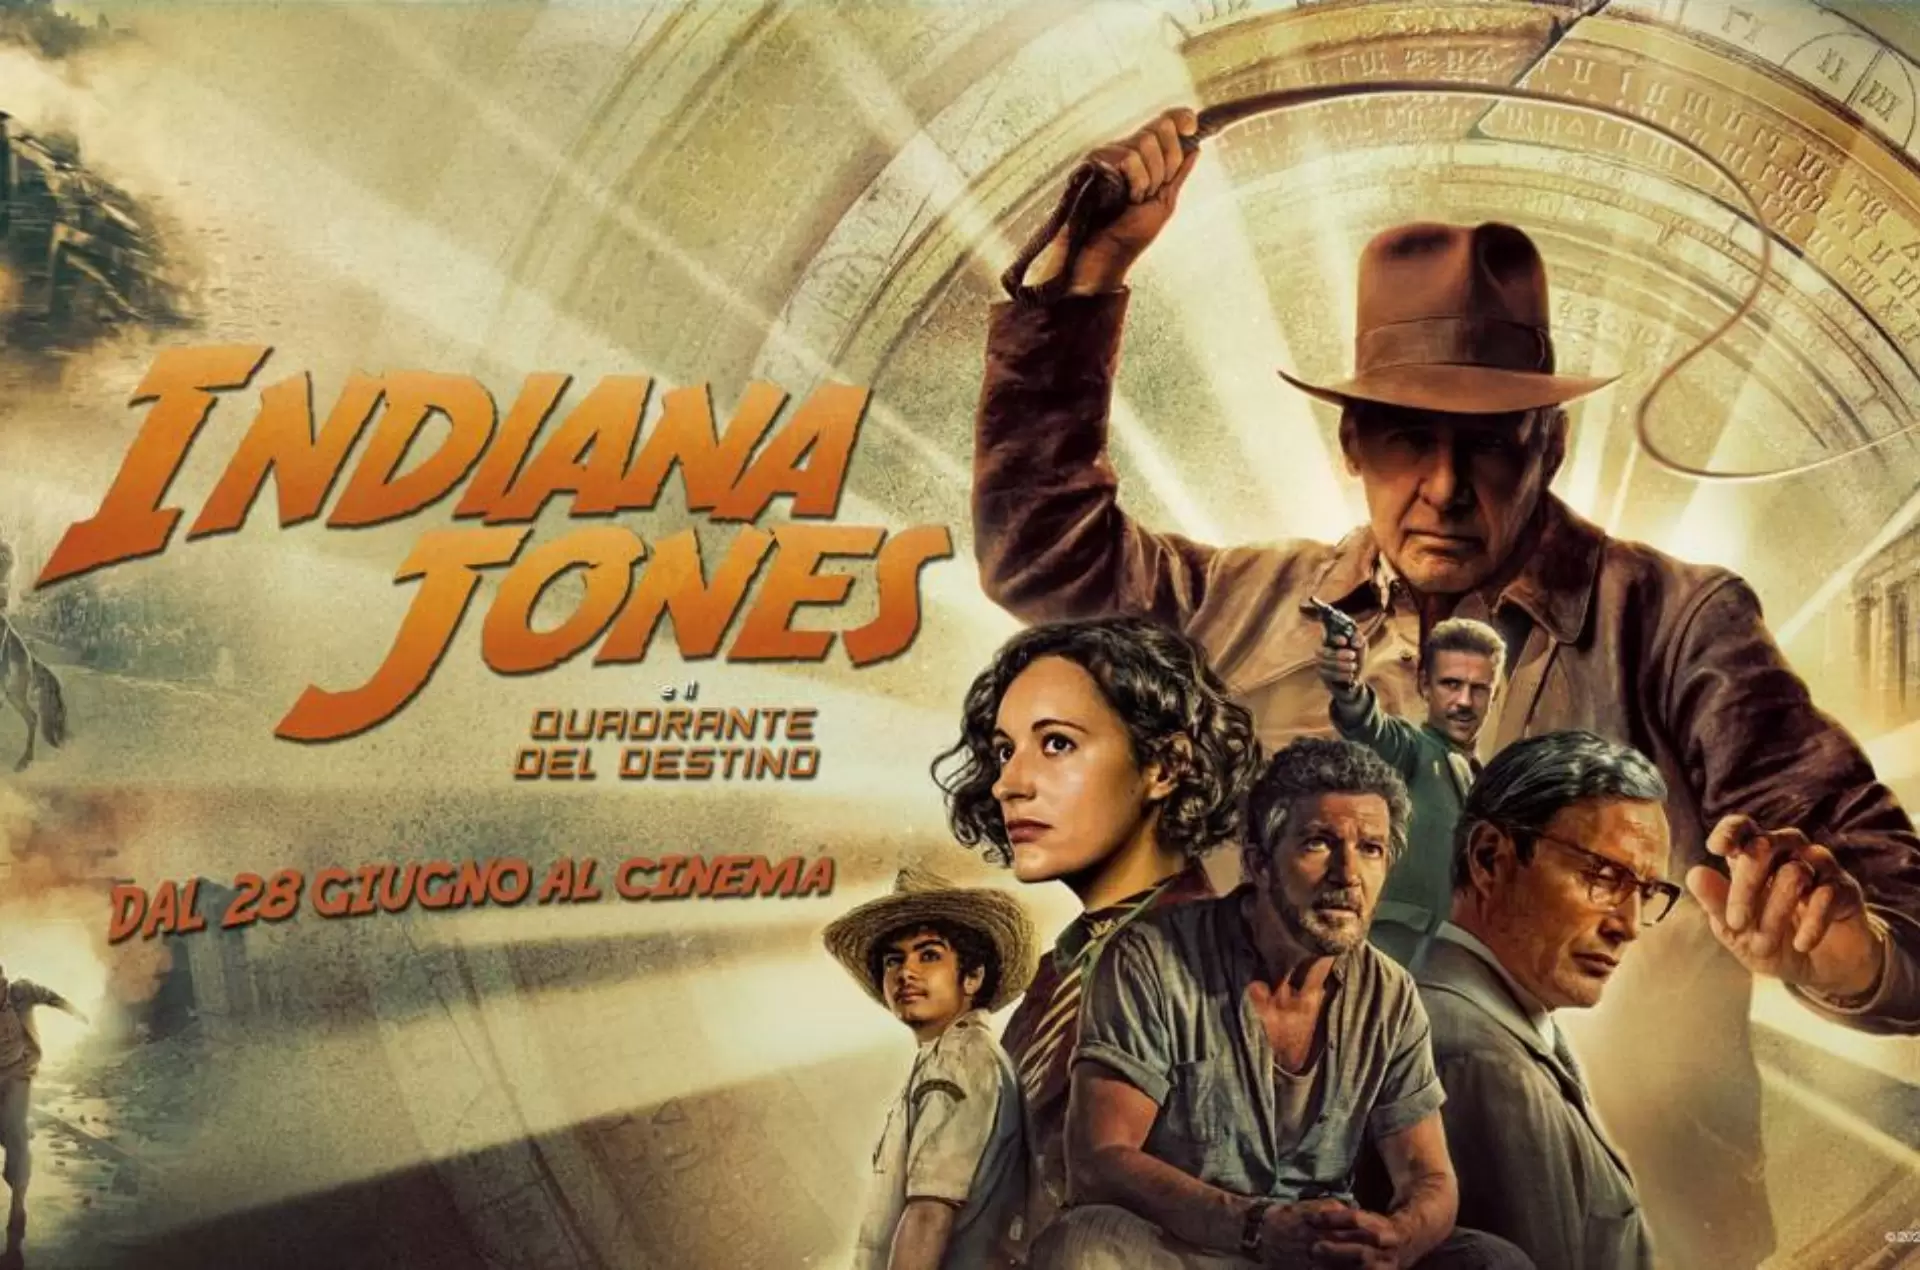 Indiana Jones e il Quadrante del Destino arriva su Disney+